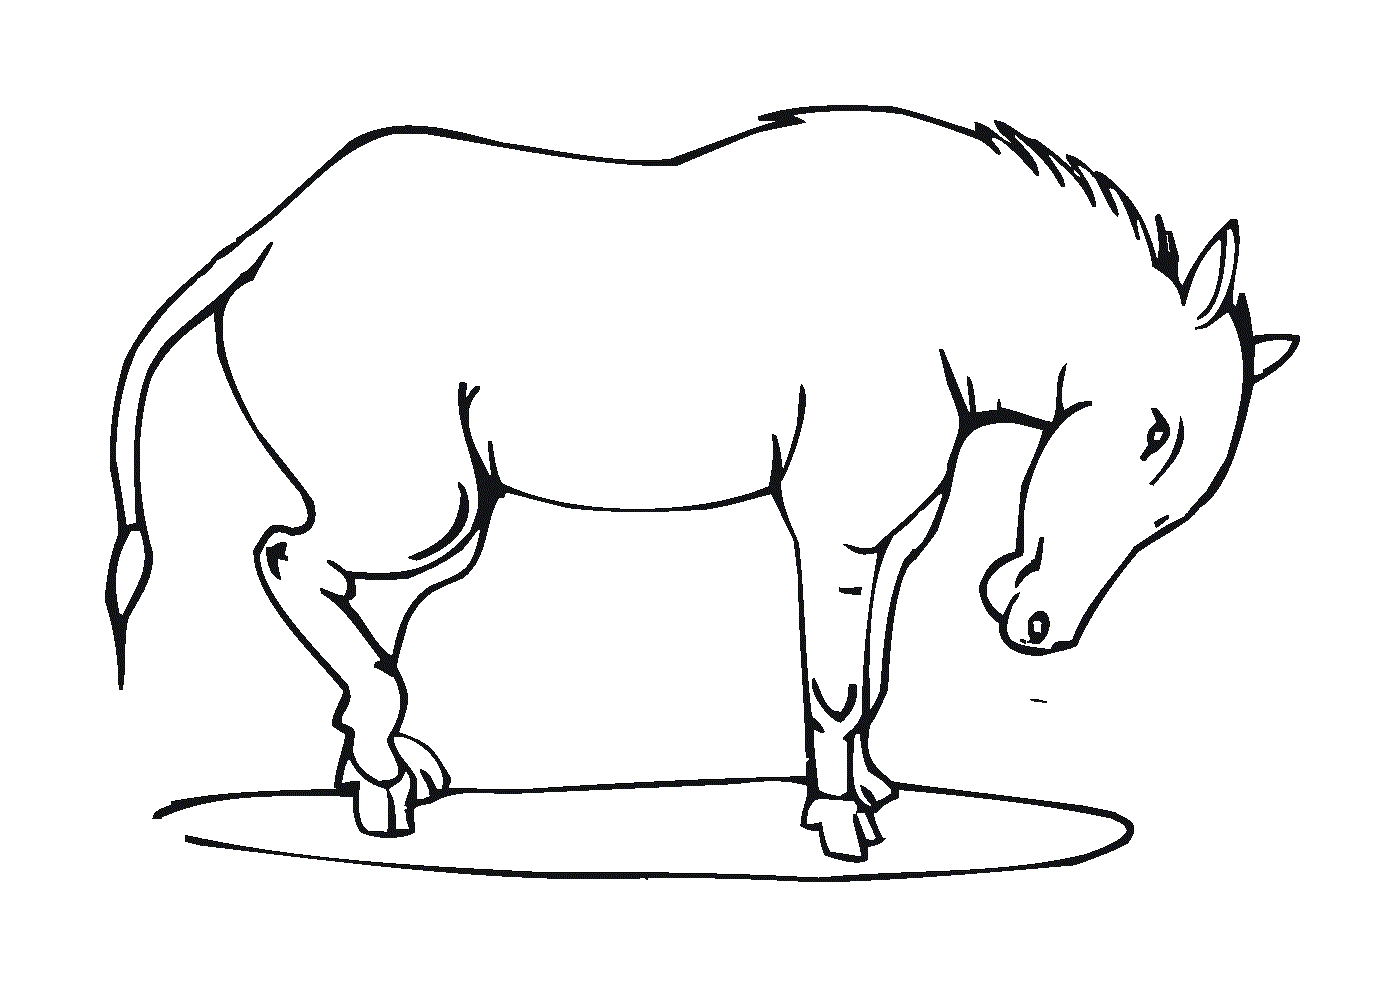  Un cheval debout avec la tête baissée